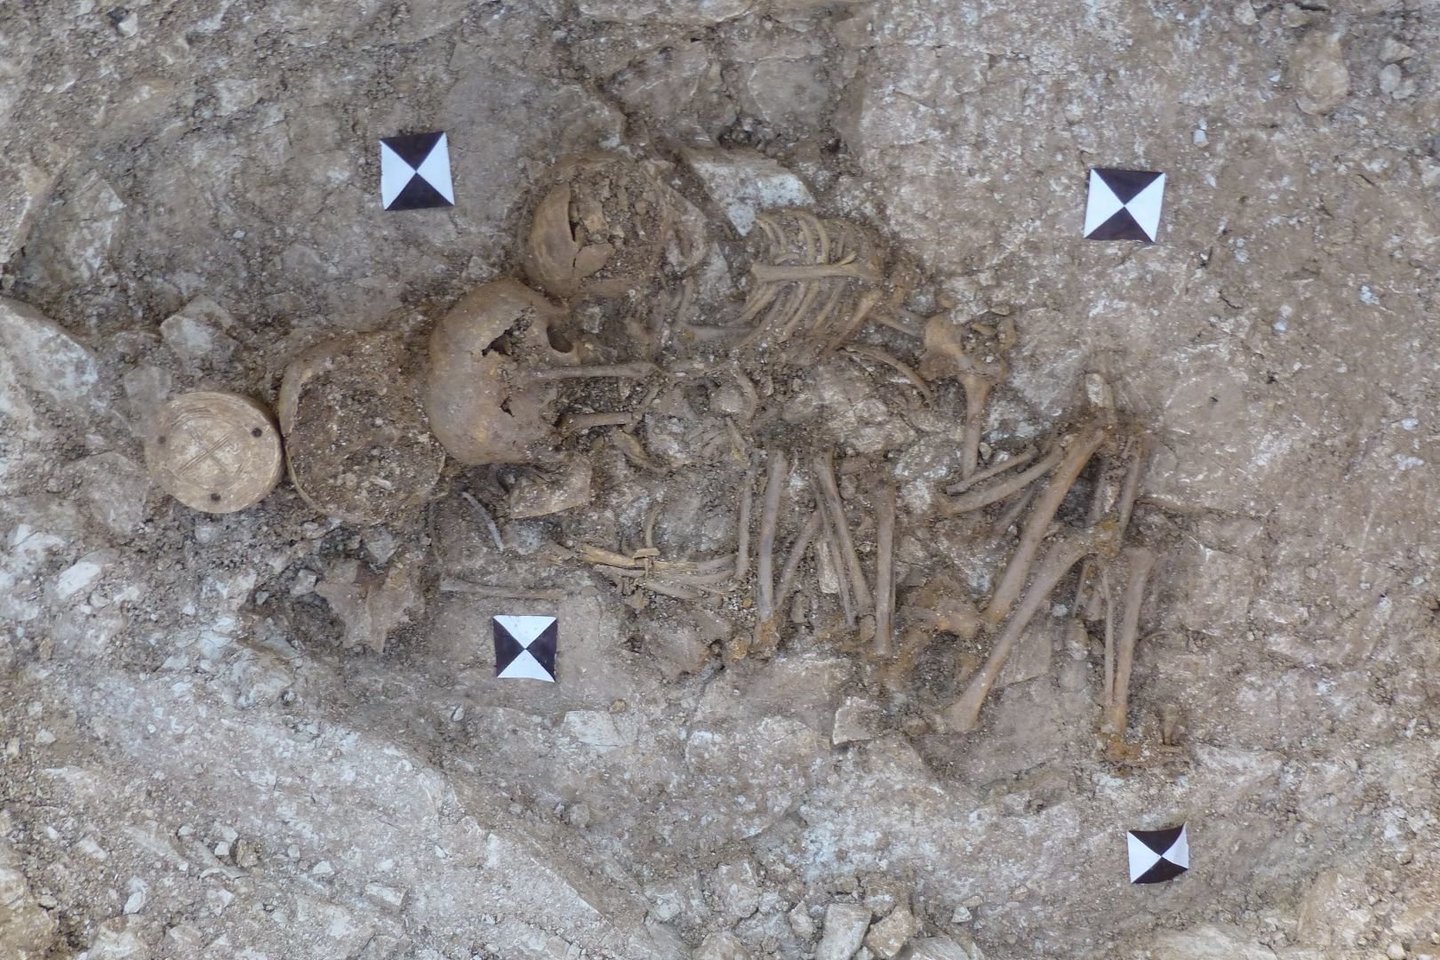  Artefaktai rasti šalia trijų palaidotų vaikų. Skulptūrėlė buvo rasta virš vyriausiojo vaiko galvos, o du jaunesnieji vaikai - vienas priešais kitą.<br> Britų muziejaus nuotr.